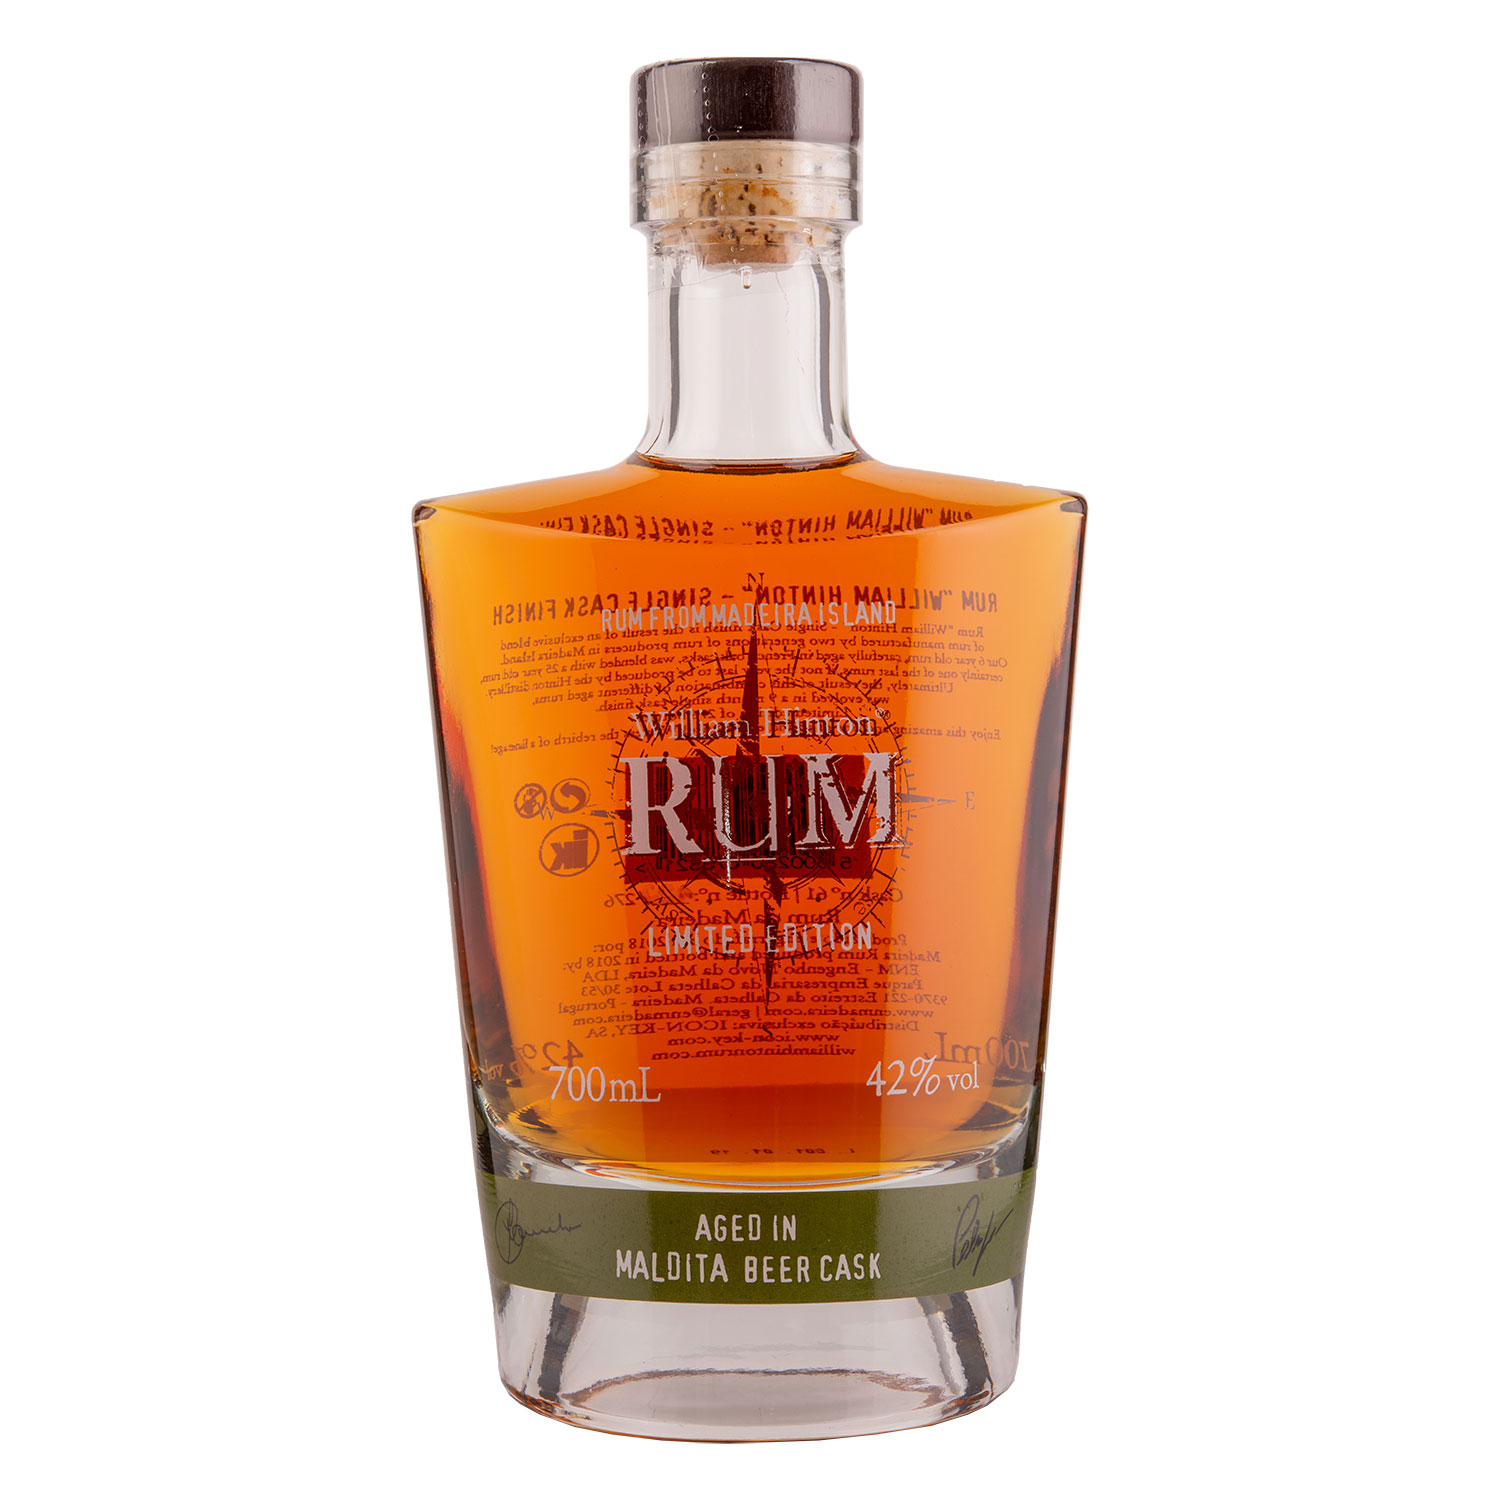 William Hinton Rum - Aged in Maldita Beer cask